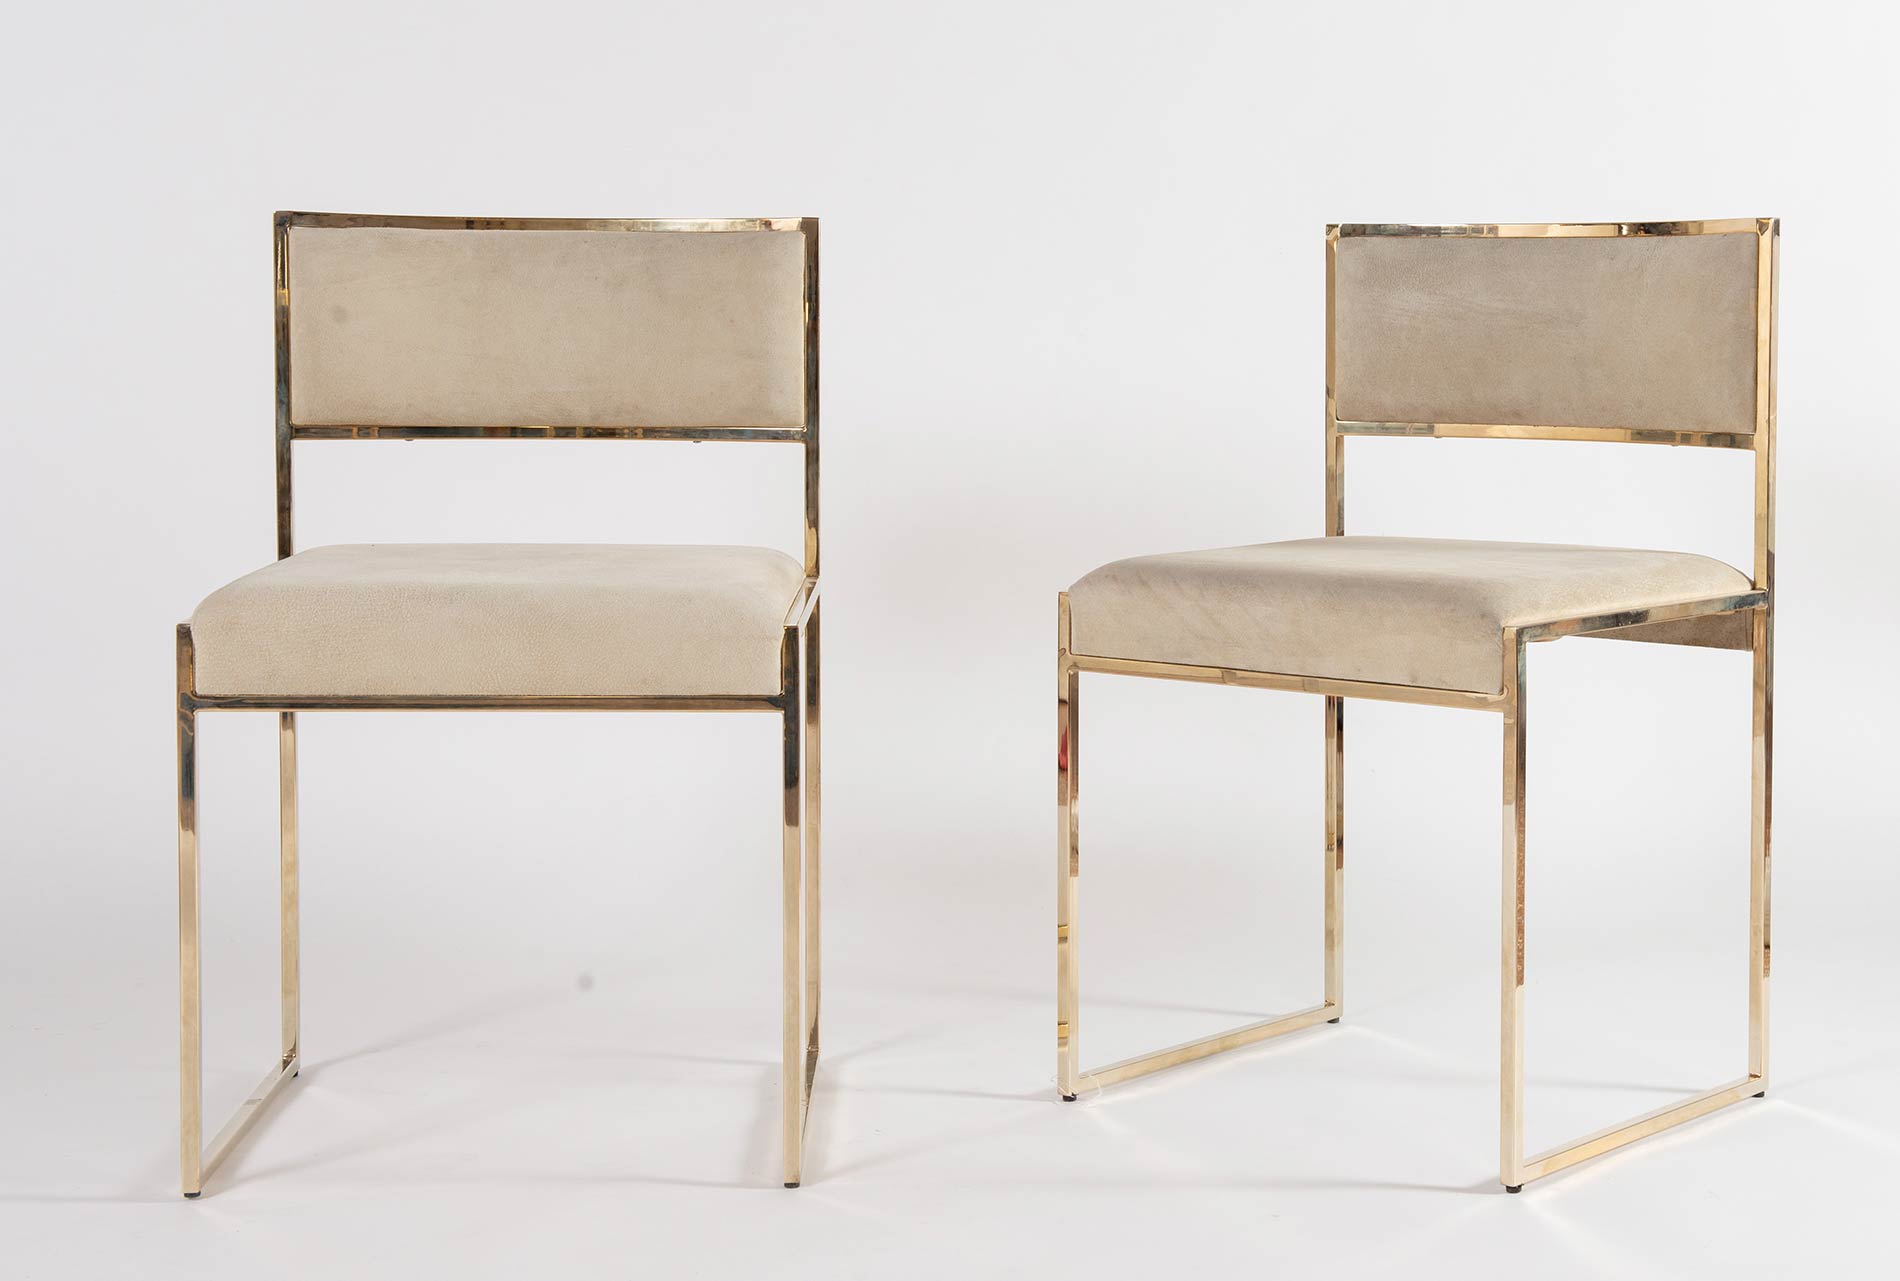 Romeo Rega, Due sedie con struttura in ottone, Anni ‘70. - Image 2 of 3